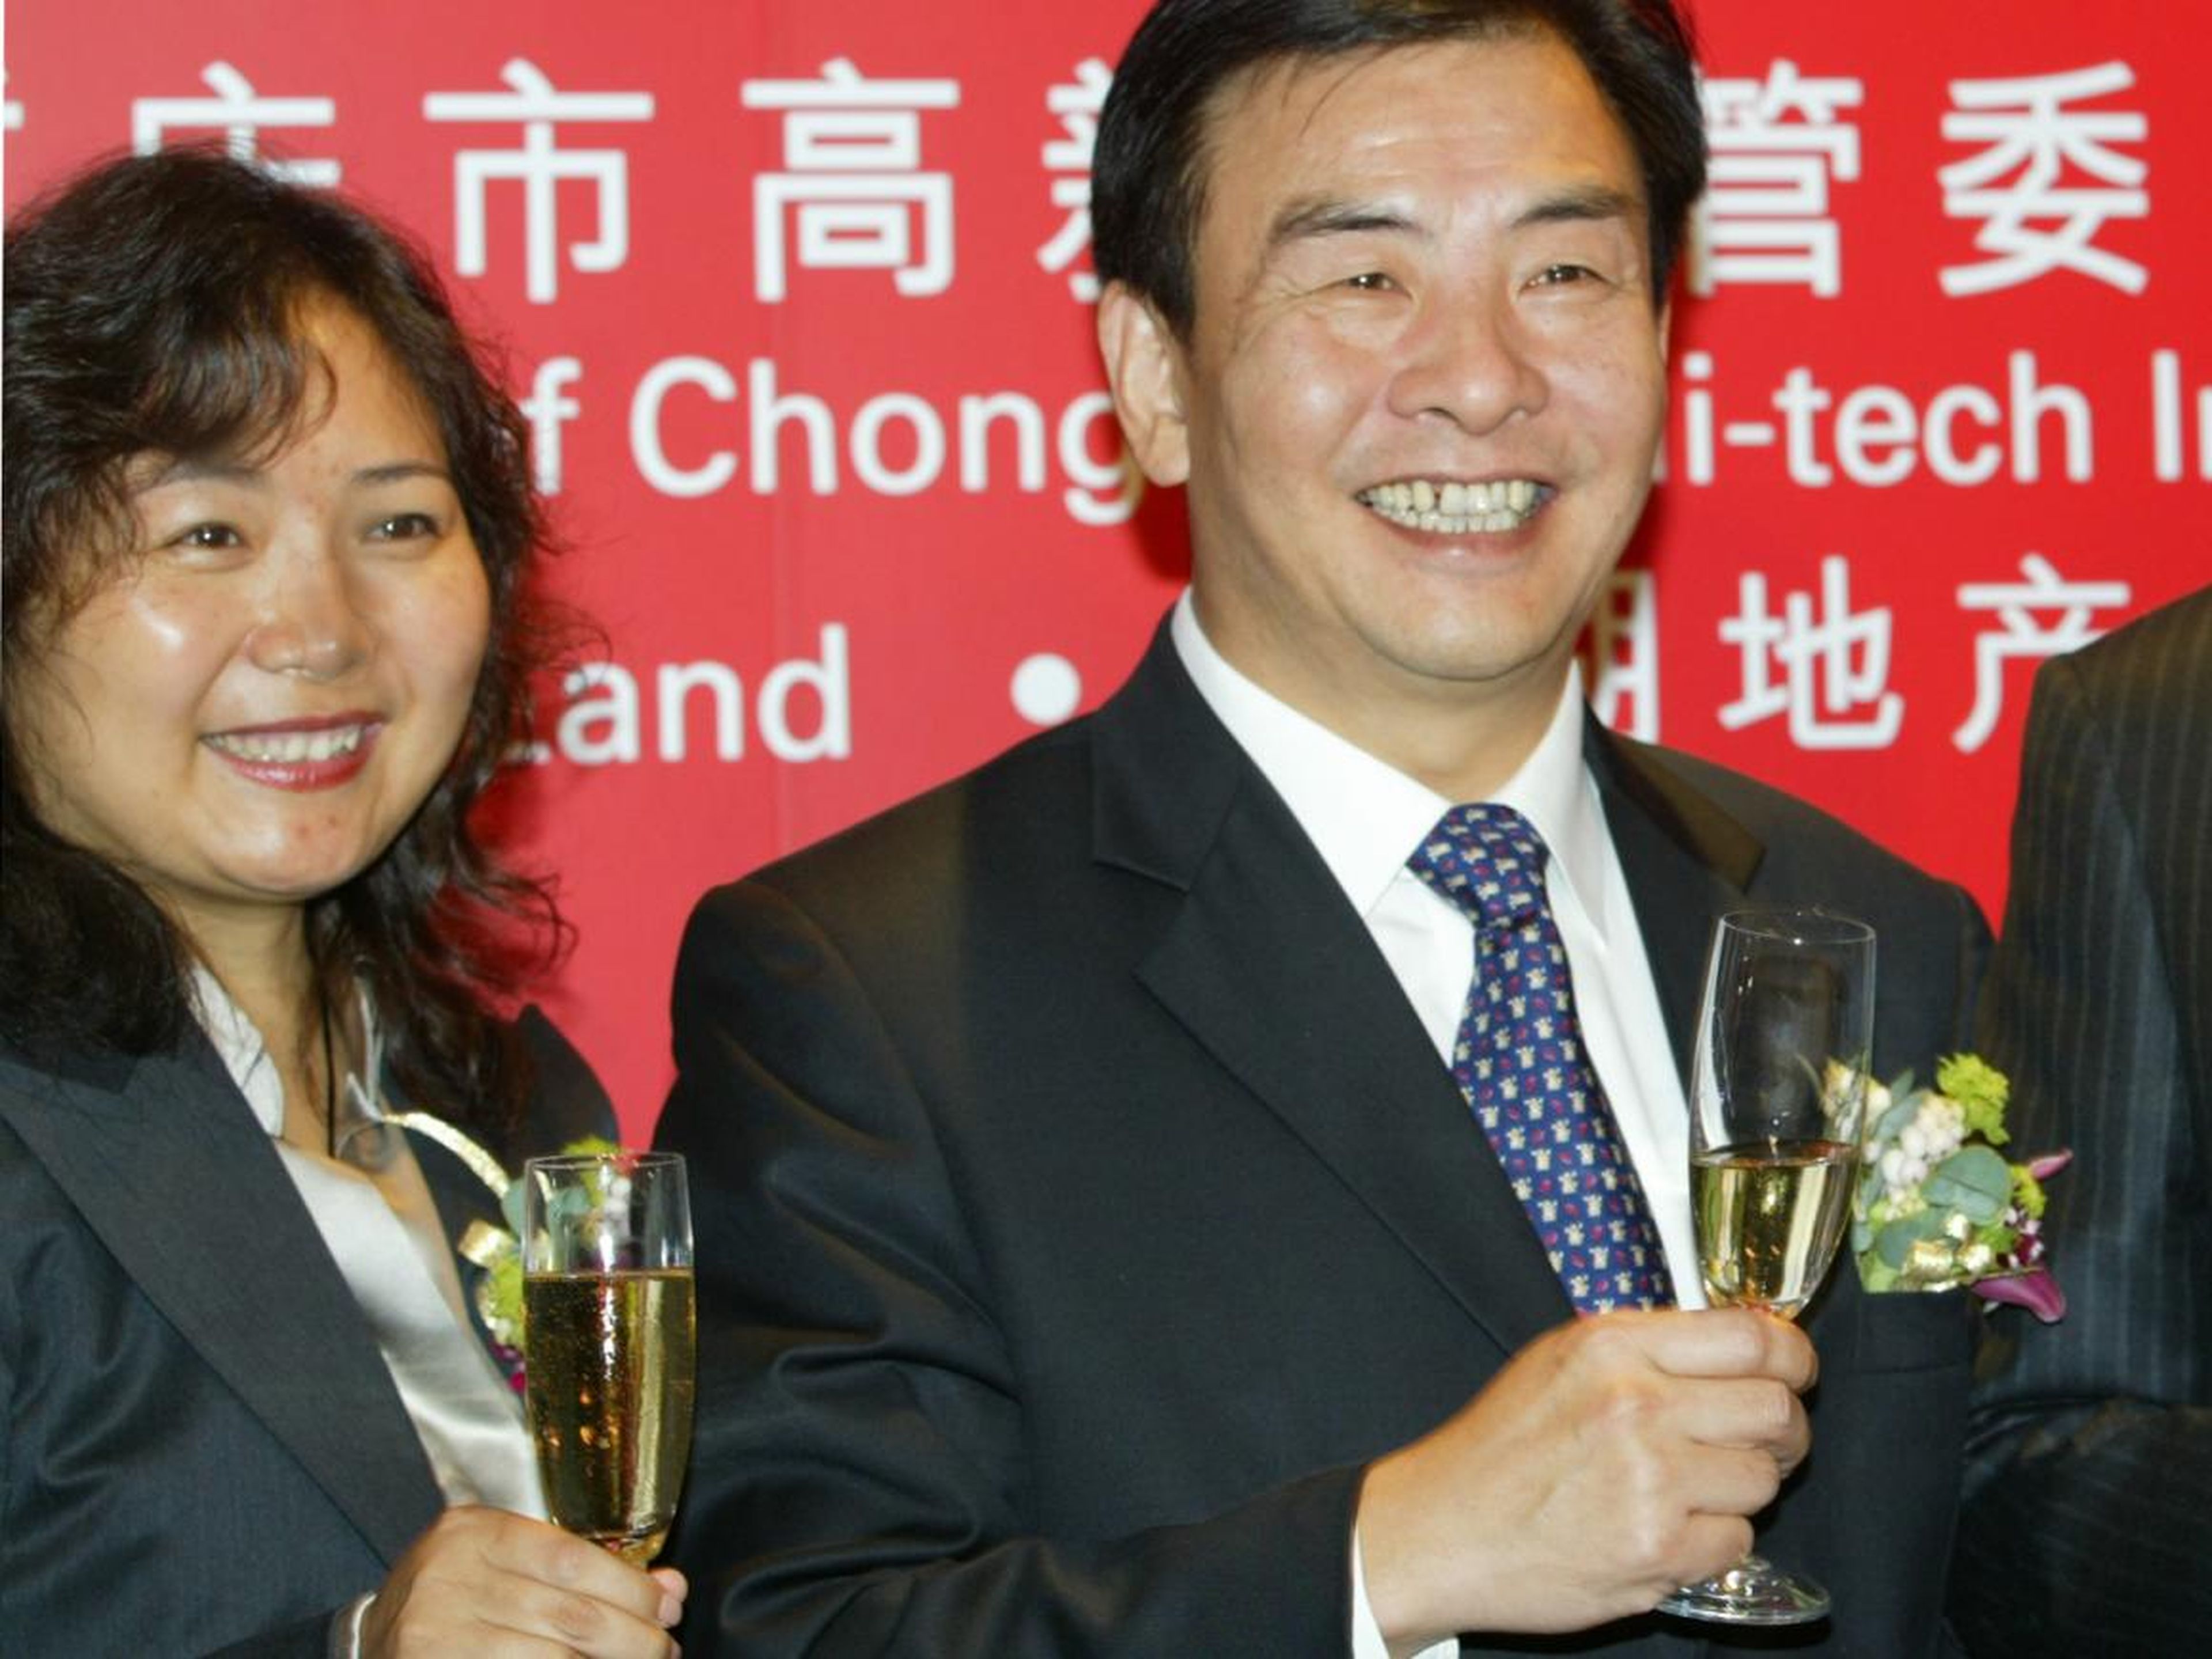 Wu with the mayor of Chongqing, Wang Hongju, in October 2004.